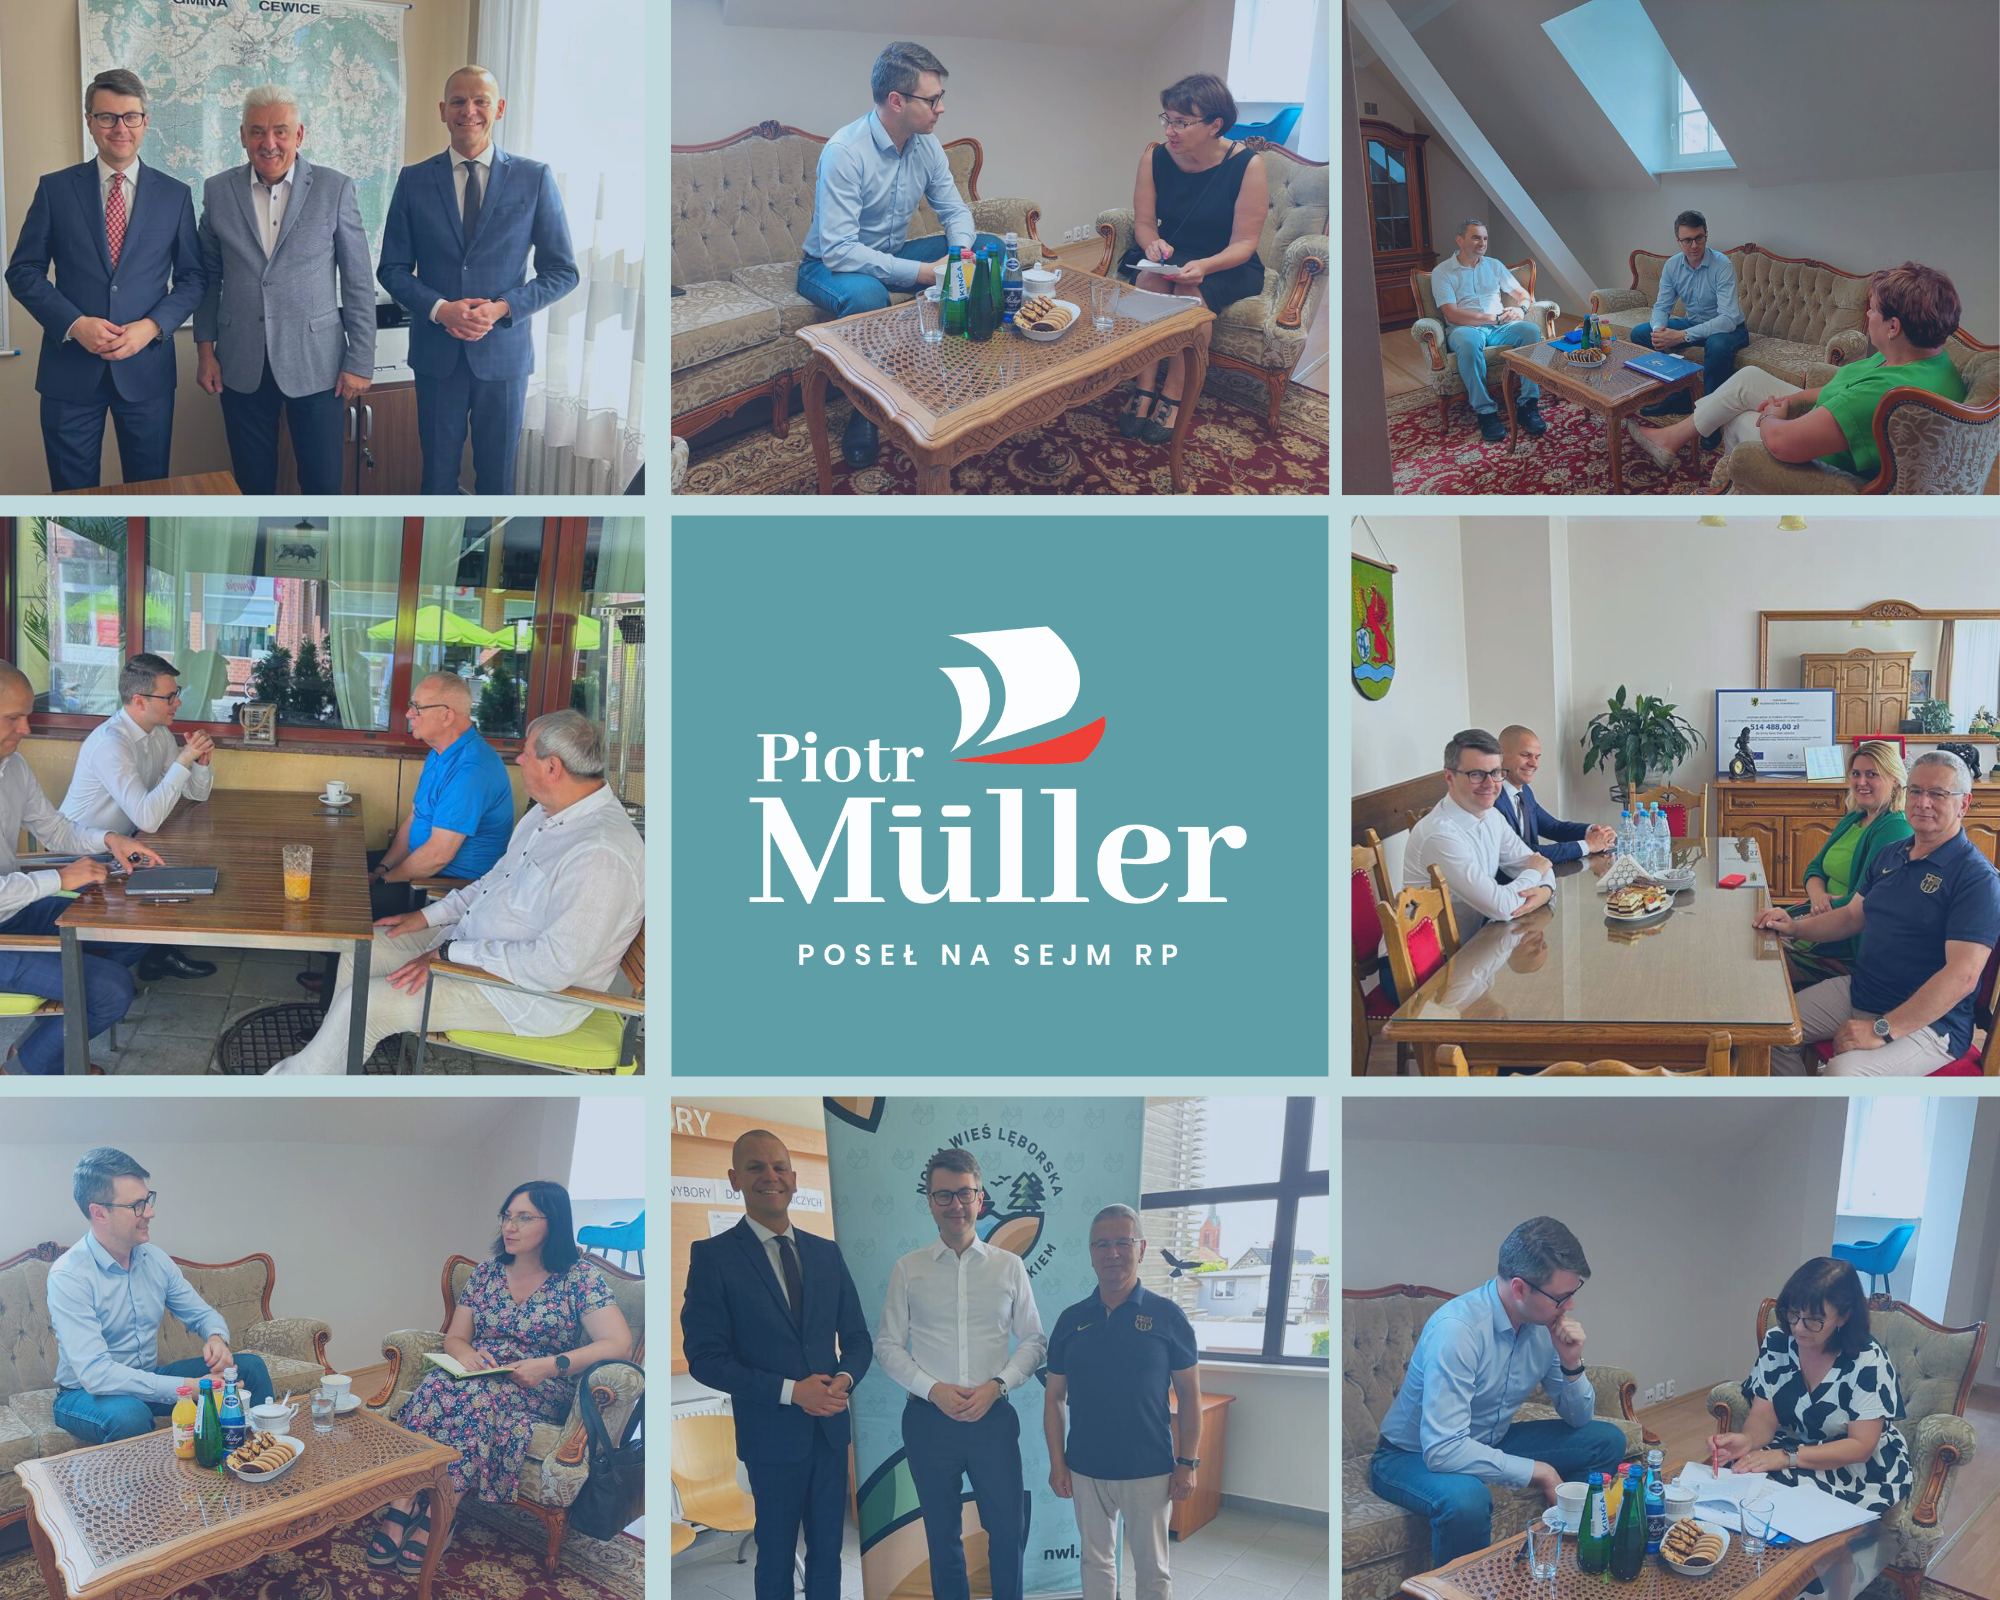 Po całym tygodniu intensywnej pracy w Kancelarii Premiera sobotę Piotr Müller, rzecznik rządu i Poseł na Sejm RP, spędził na aktywności i spotkaniach w regionie.